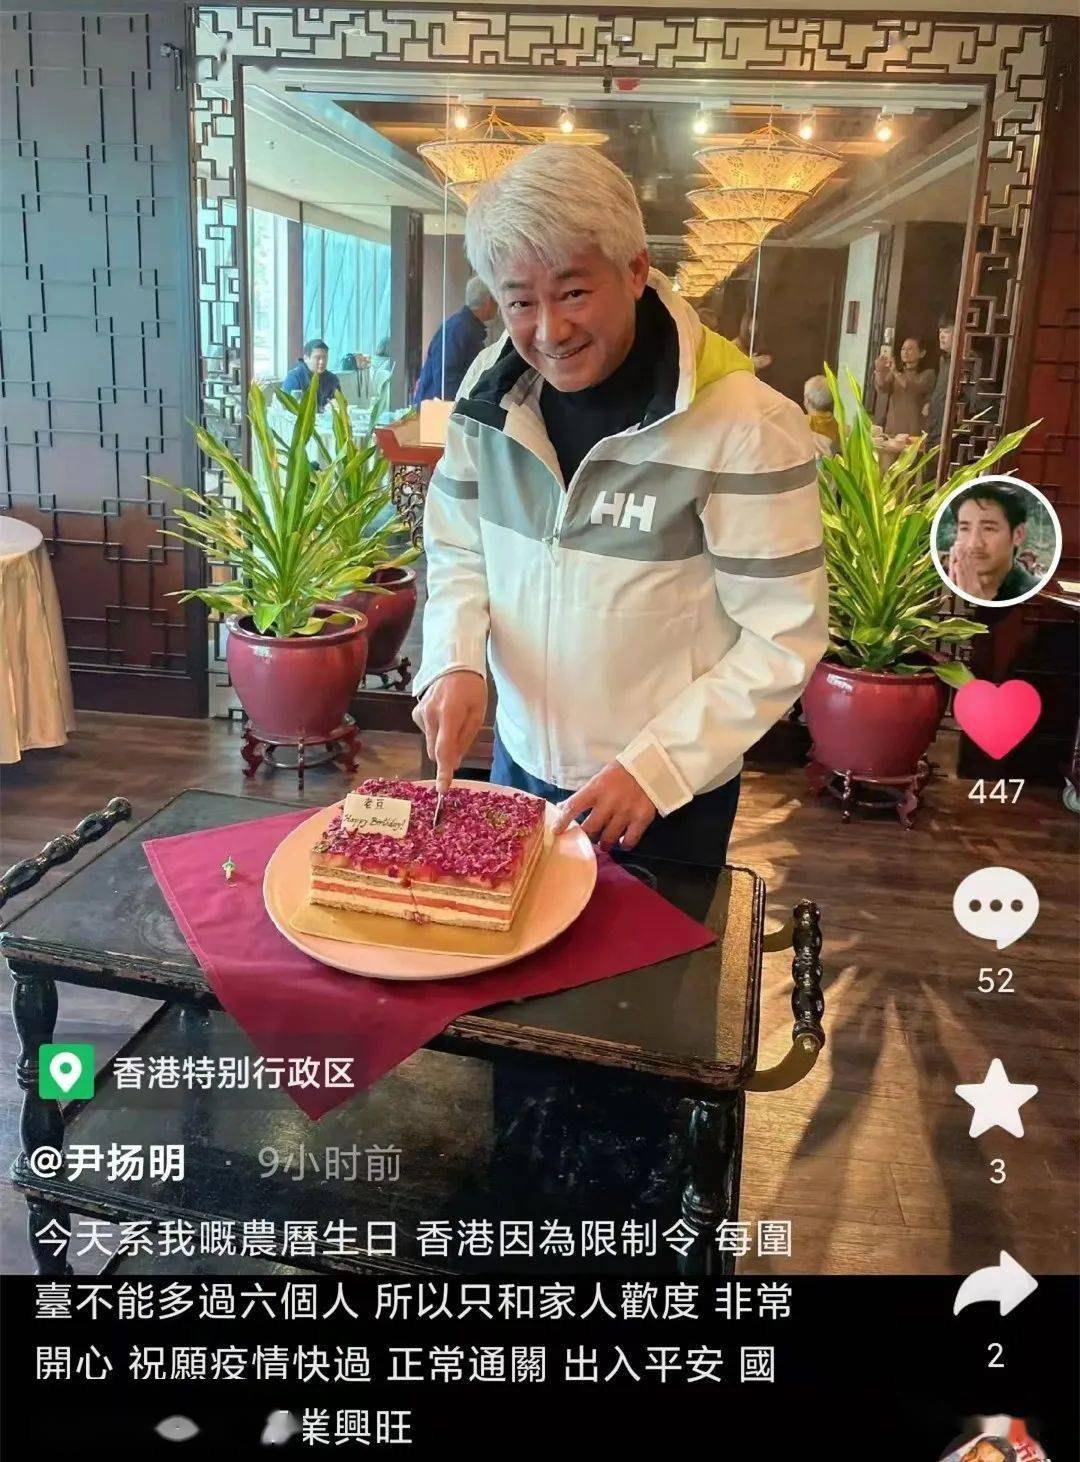 满头白发精神好64岁香港老戏骨尹扬明与家人庆祝生日子女已结婚多年